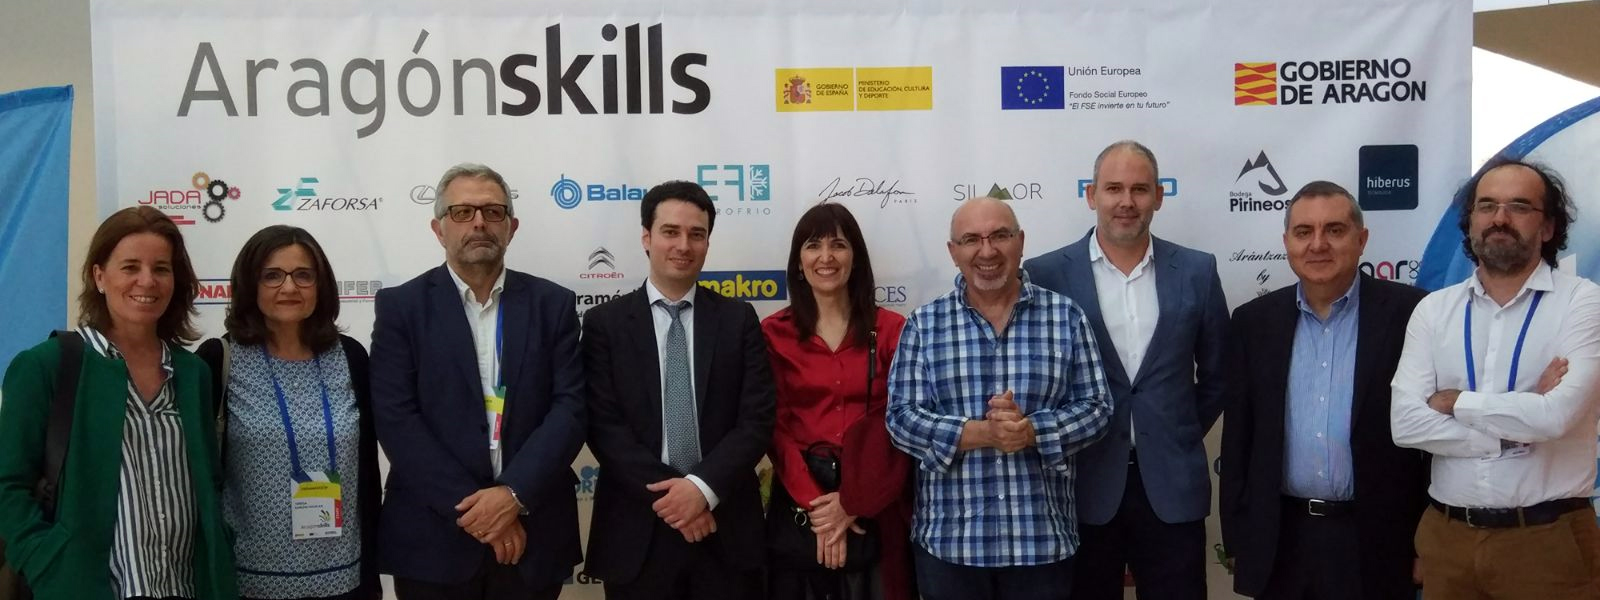 Aragón Skills 2018